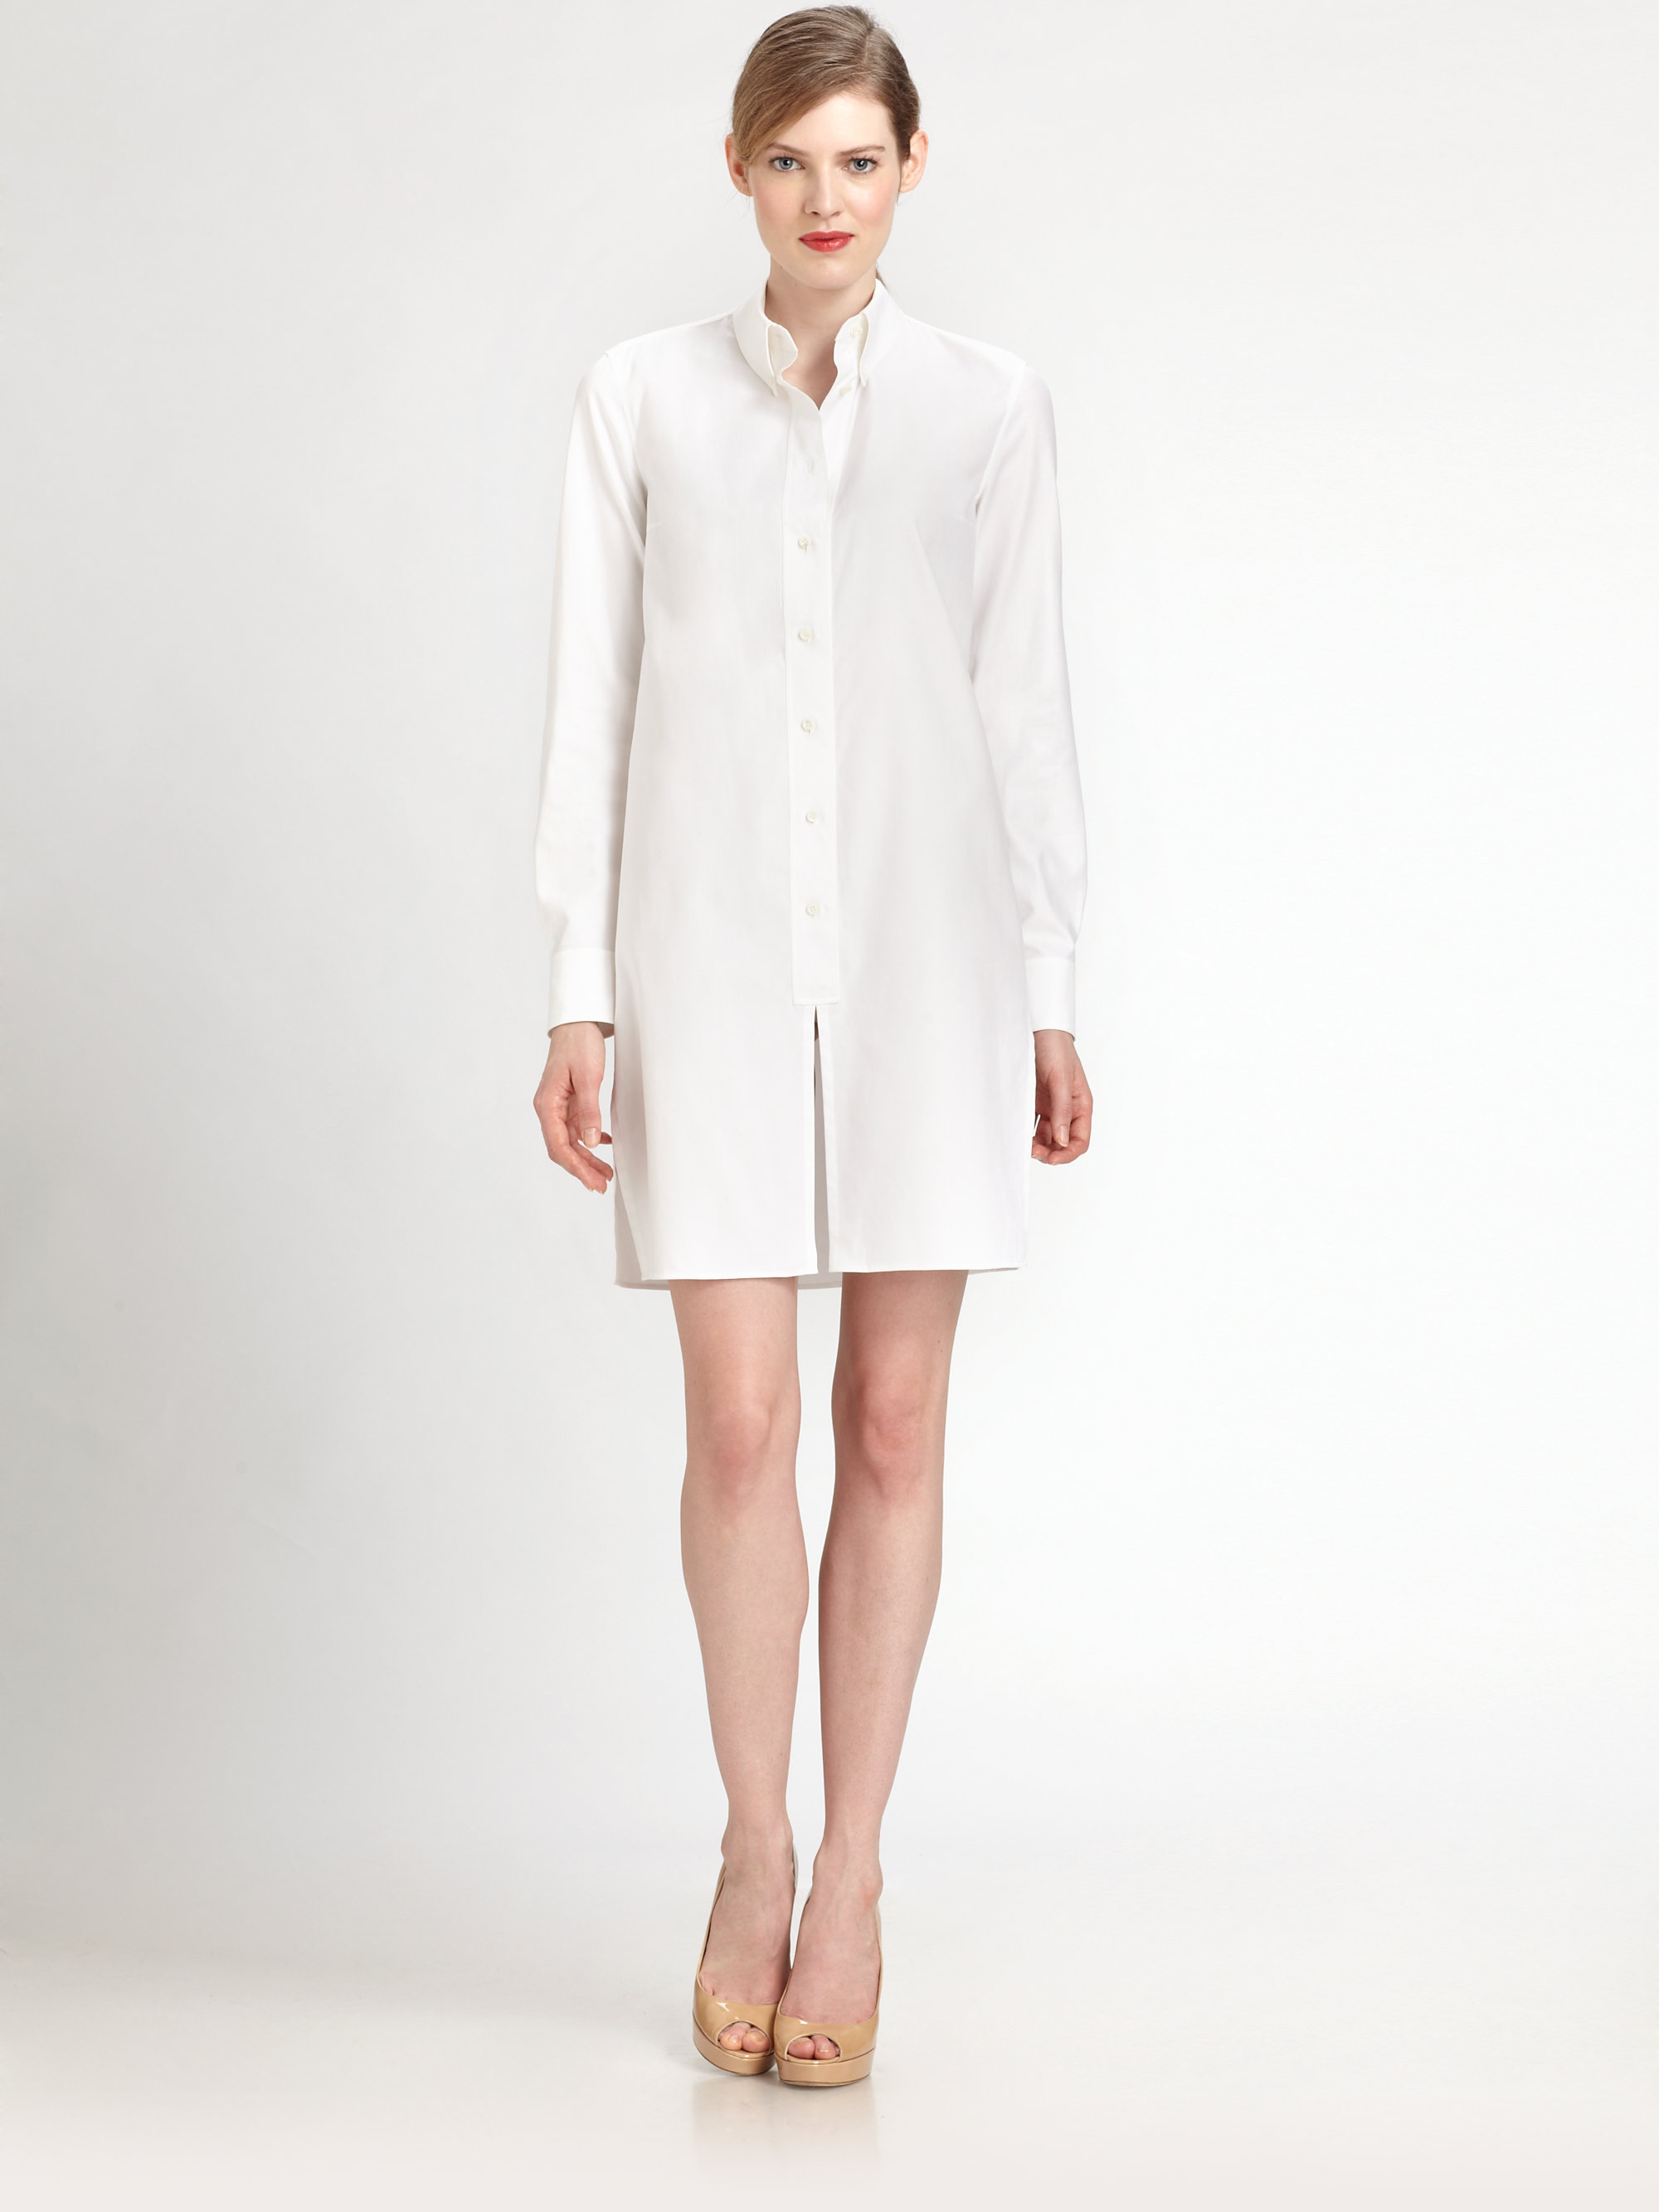 white tunic dress